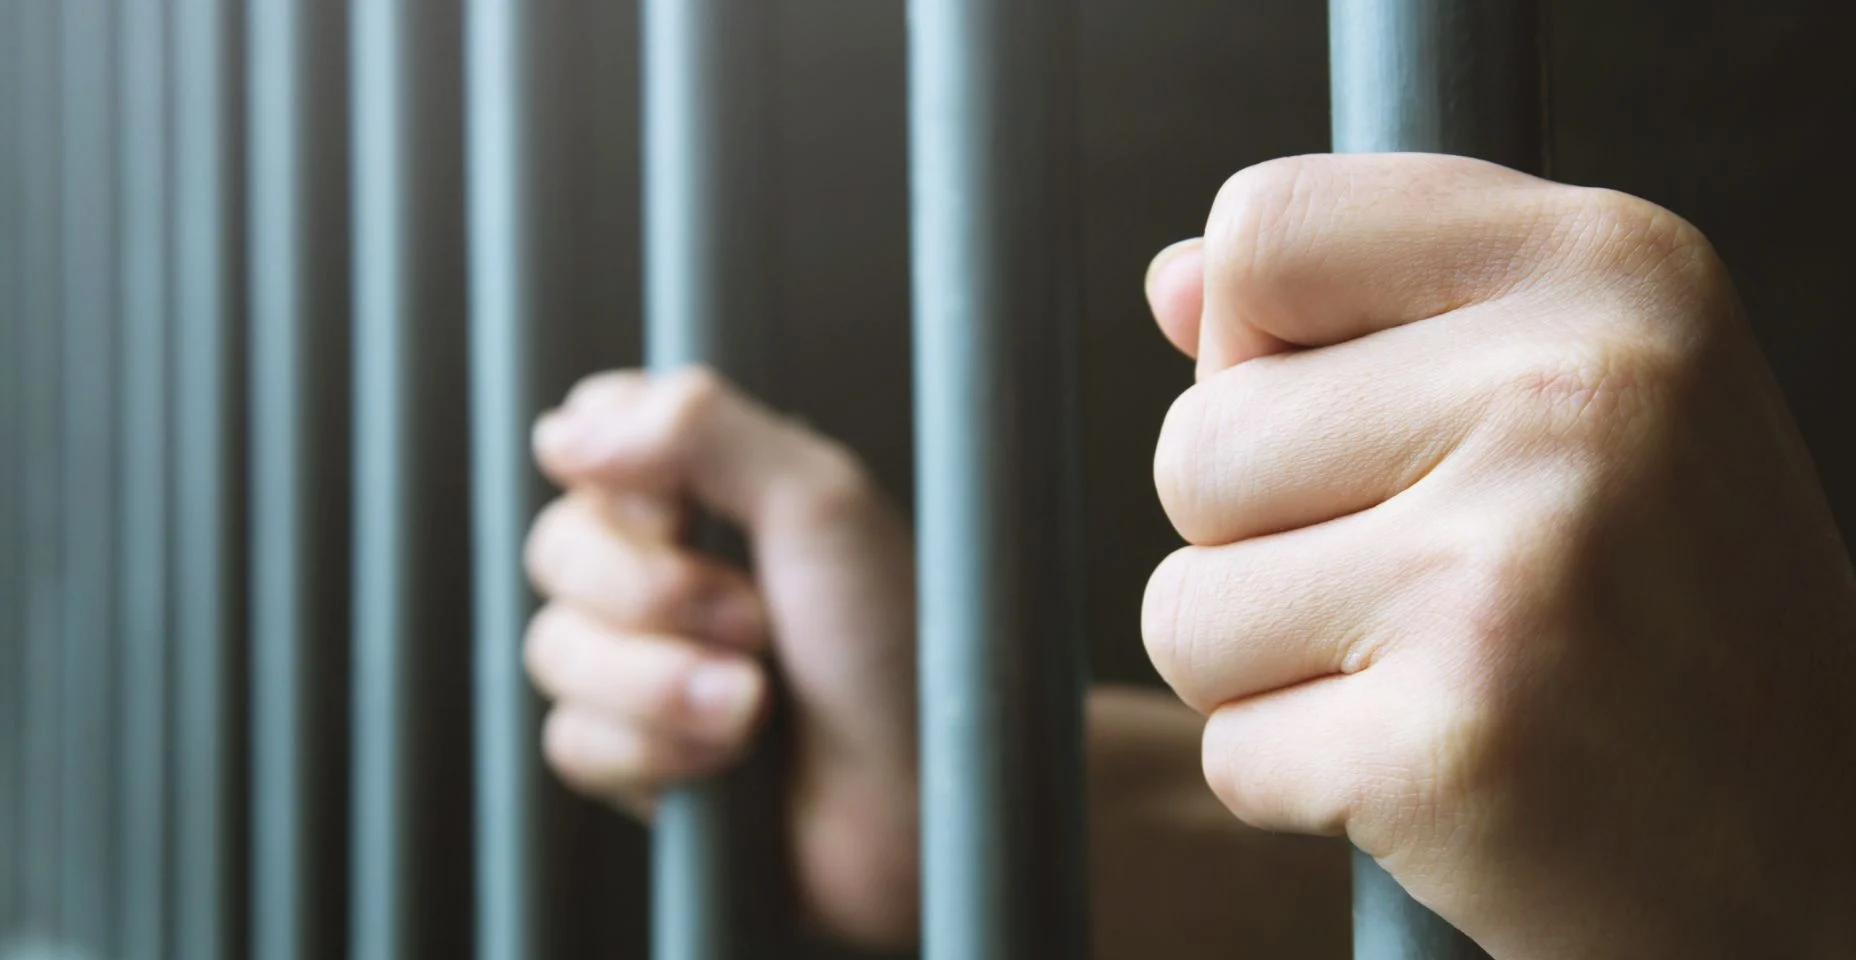 Homem na prisão mãos de atrás espera gaiola de aço barras de prisão. penal do ofensor trancado na cadeia